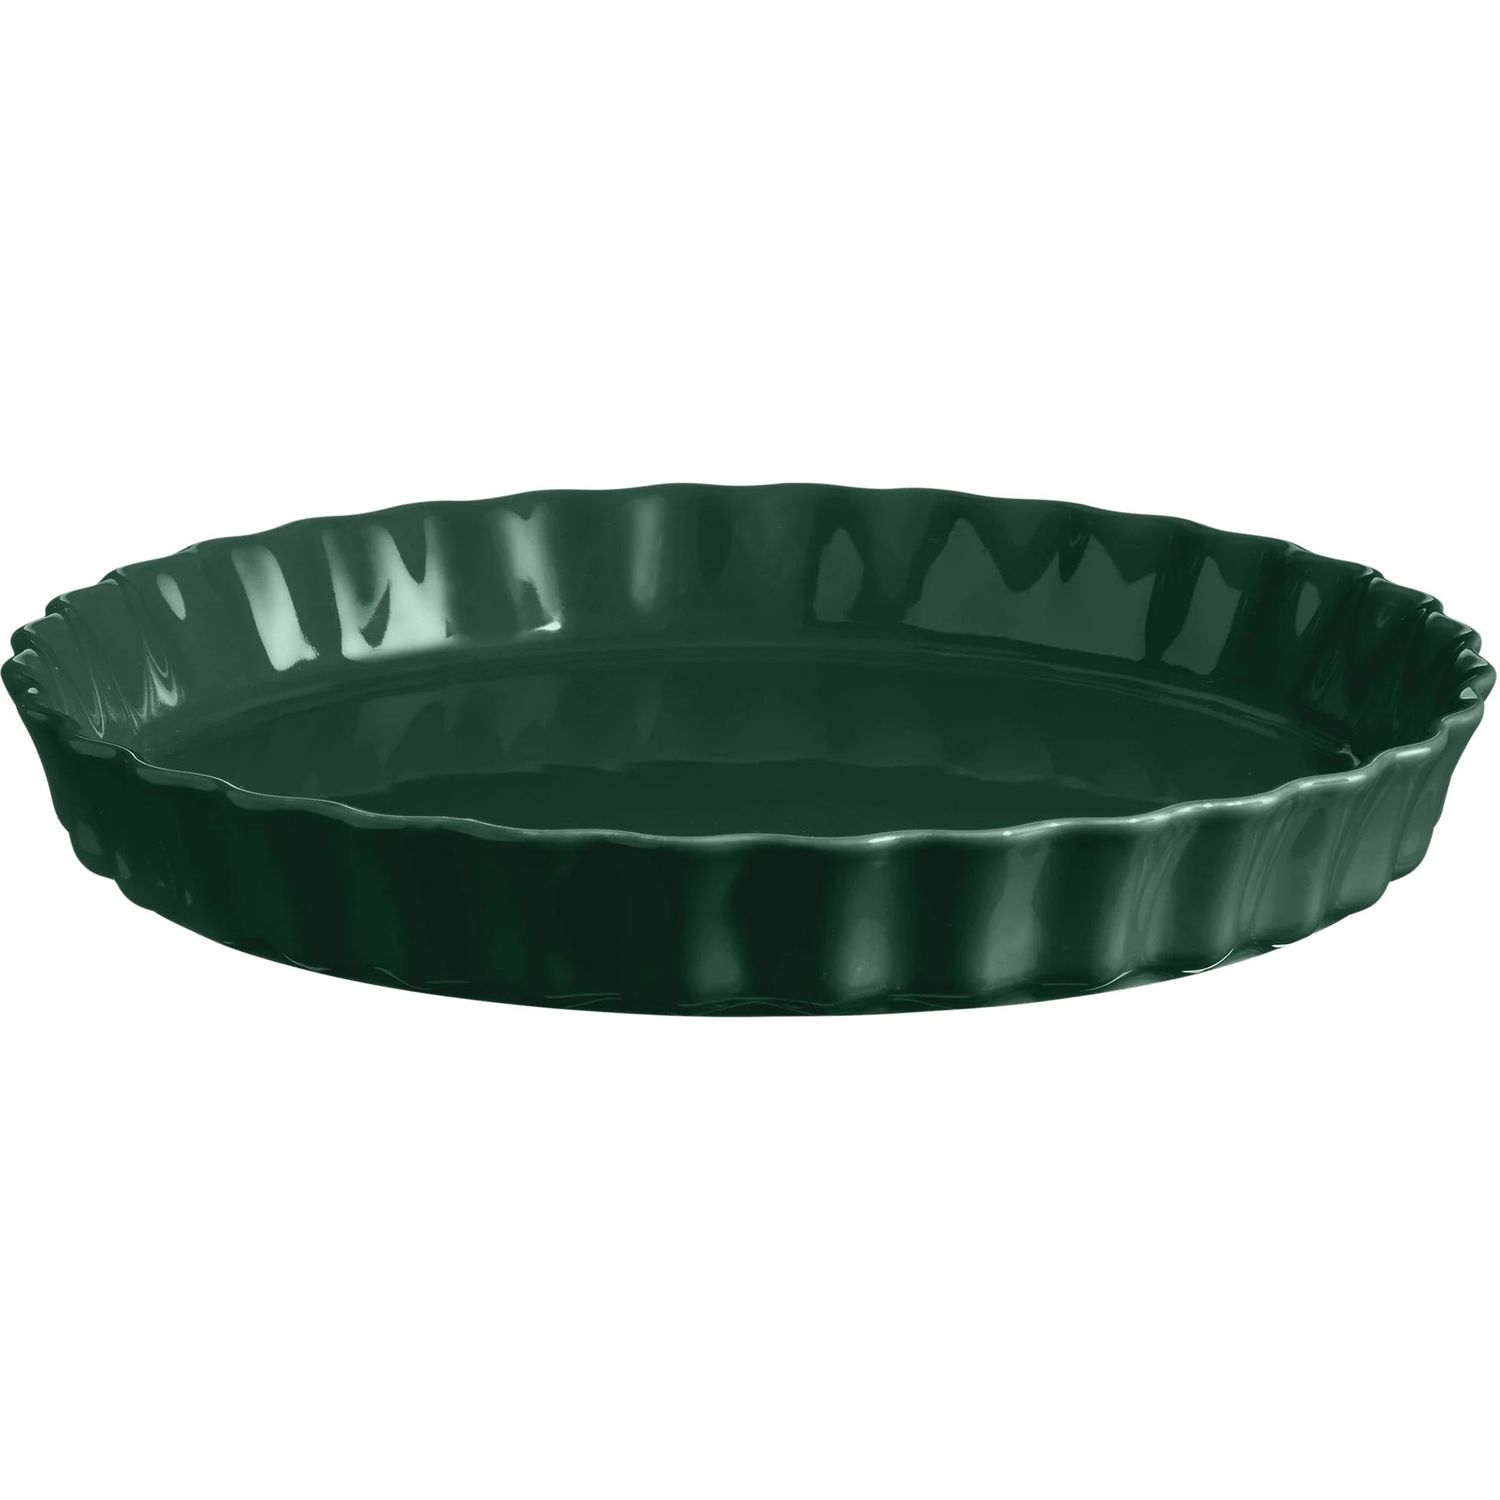 Форма для выпечки Emile Henry Ovenware круглая 29.5 см зеленая (76031) - фото 1